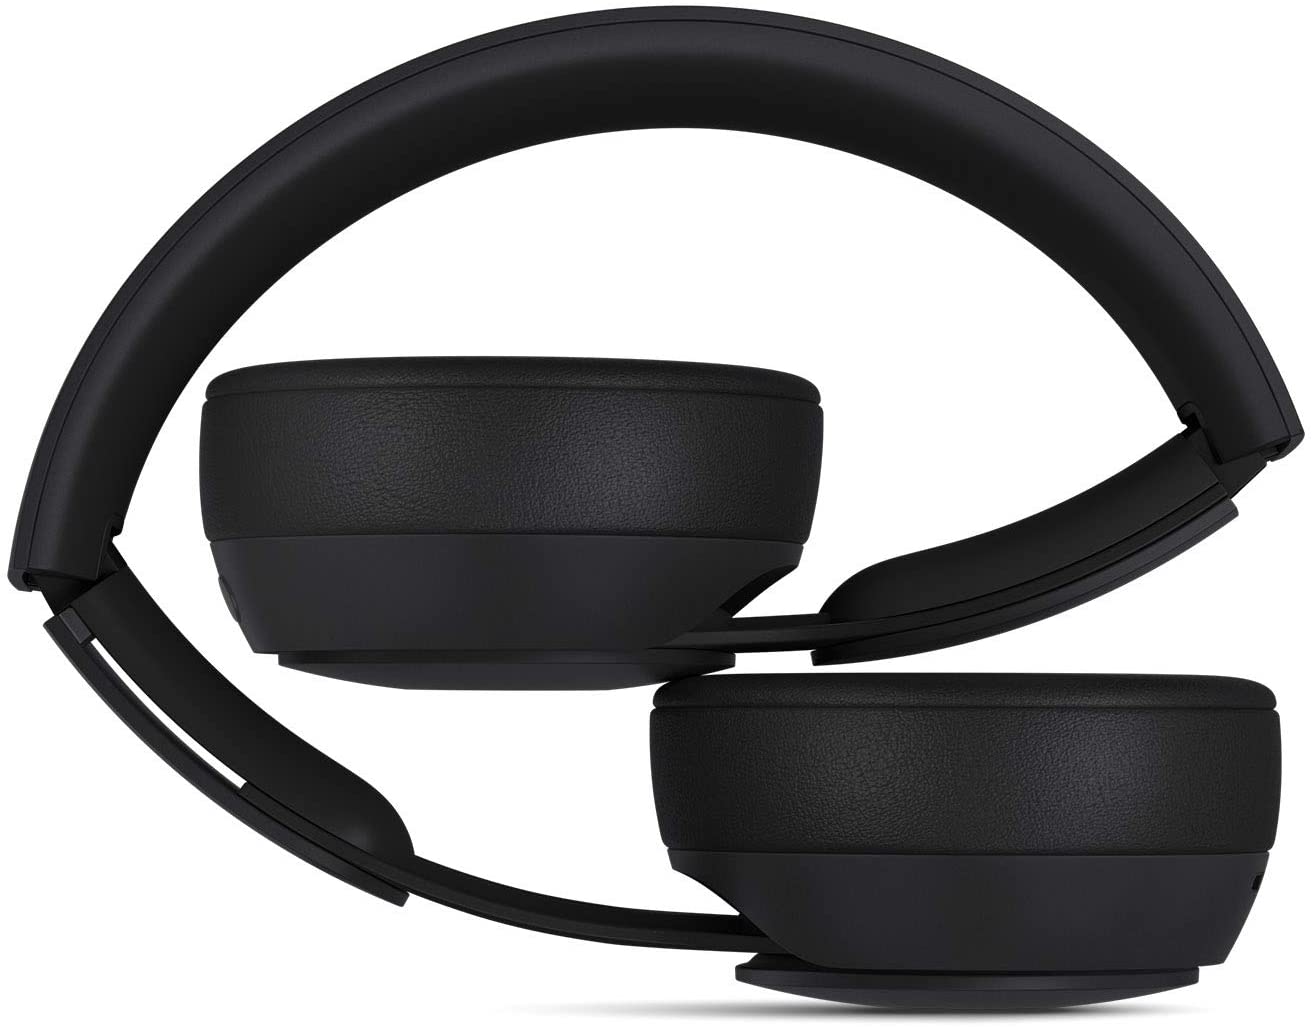 Beats Solo Pro Wireless Noise Cancelling On-Ear Headphones - Apple 